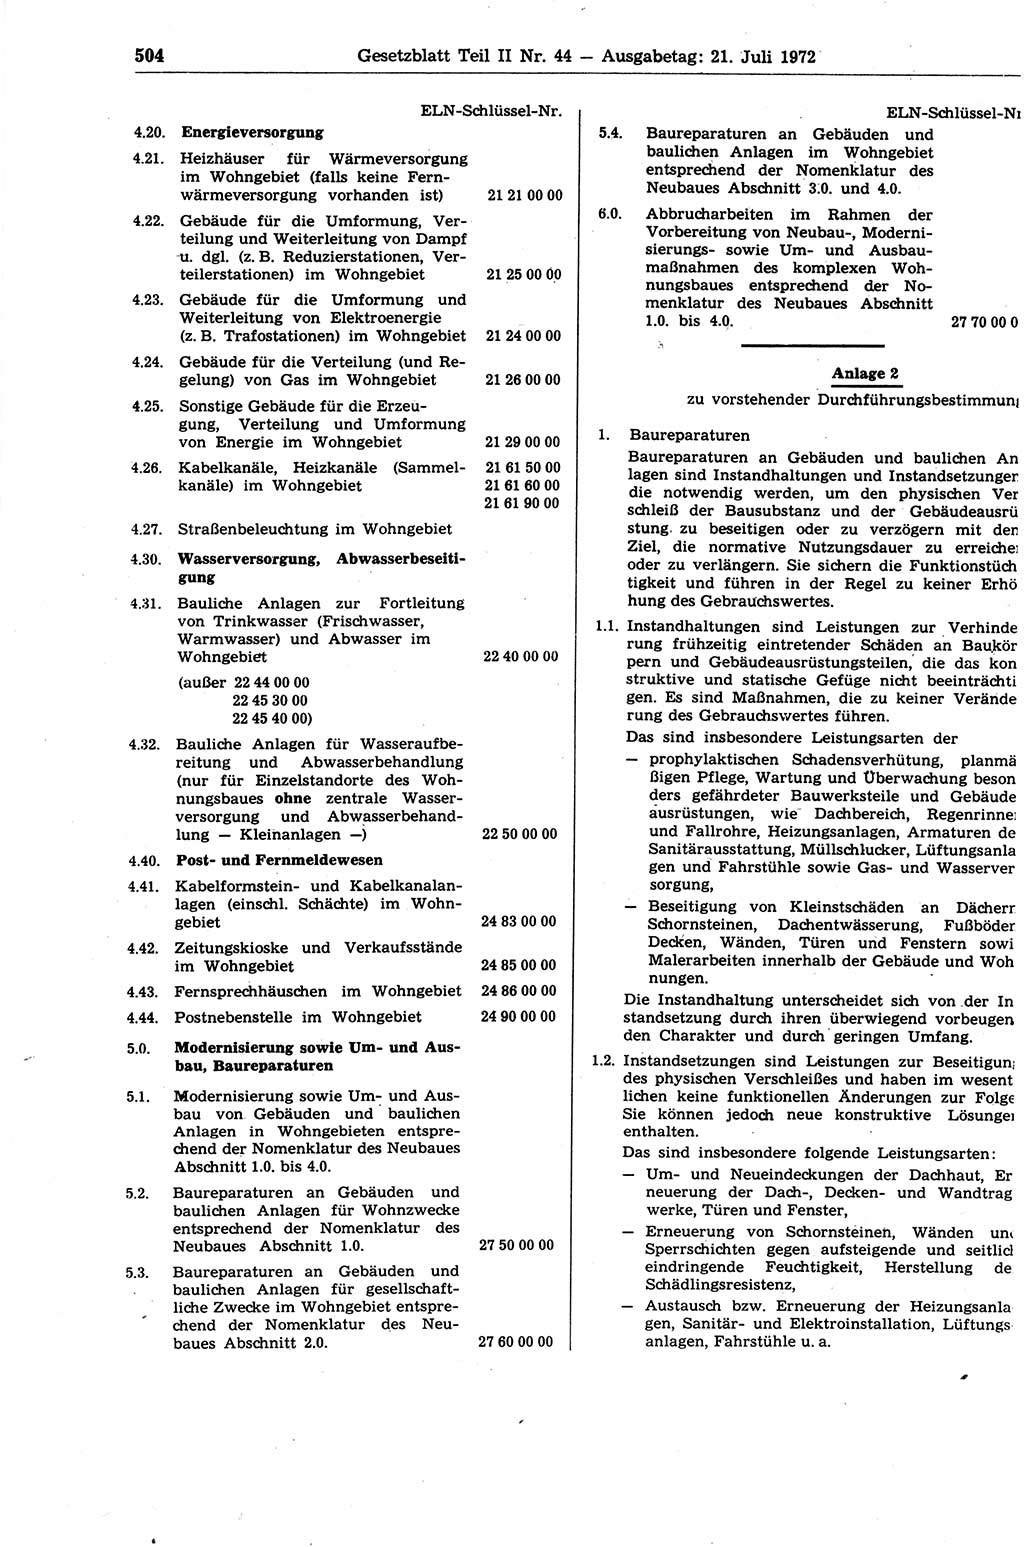 Gesetzblatt (GBl.) der Deutschen Demokratischen Republik (DDR) Teil ⅠⅠ 1972, Seite 504 (GBl. DDR ⅠⅠ 1972, S. 504)